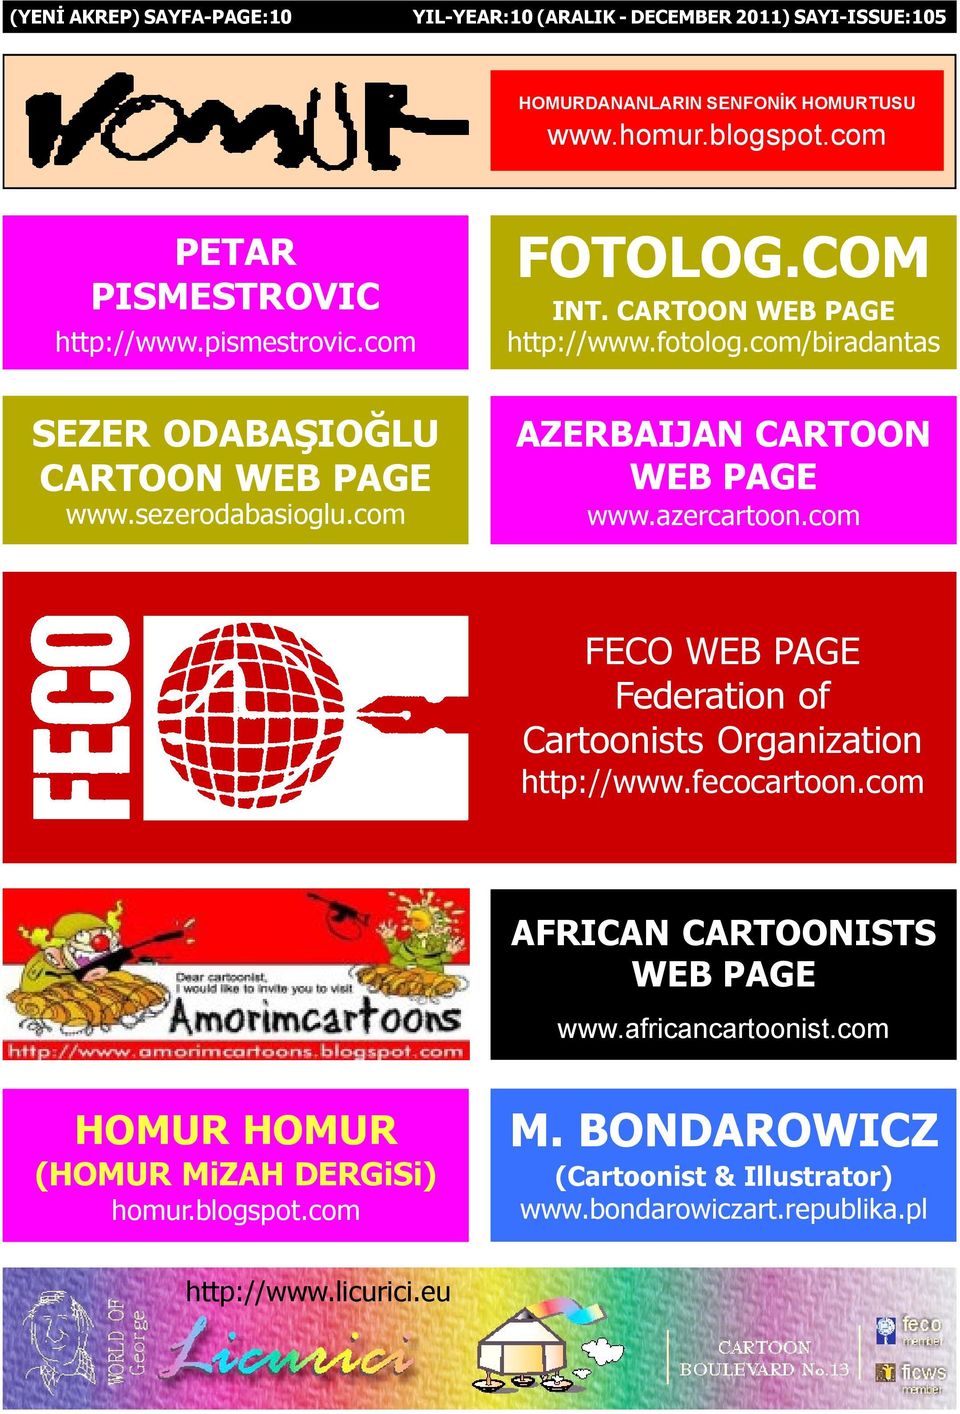 azercartoon.com FECO WEB PAGE Federation of Cartoonists Organization http://www.fecocartoon.com AFRICAN CARTOONISTS WEB PAGE www.africancartoonist.